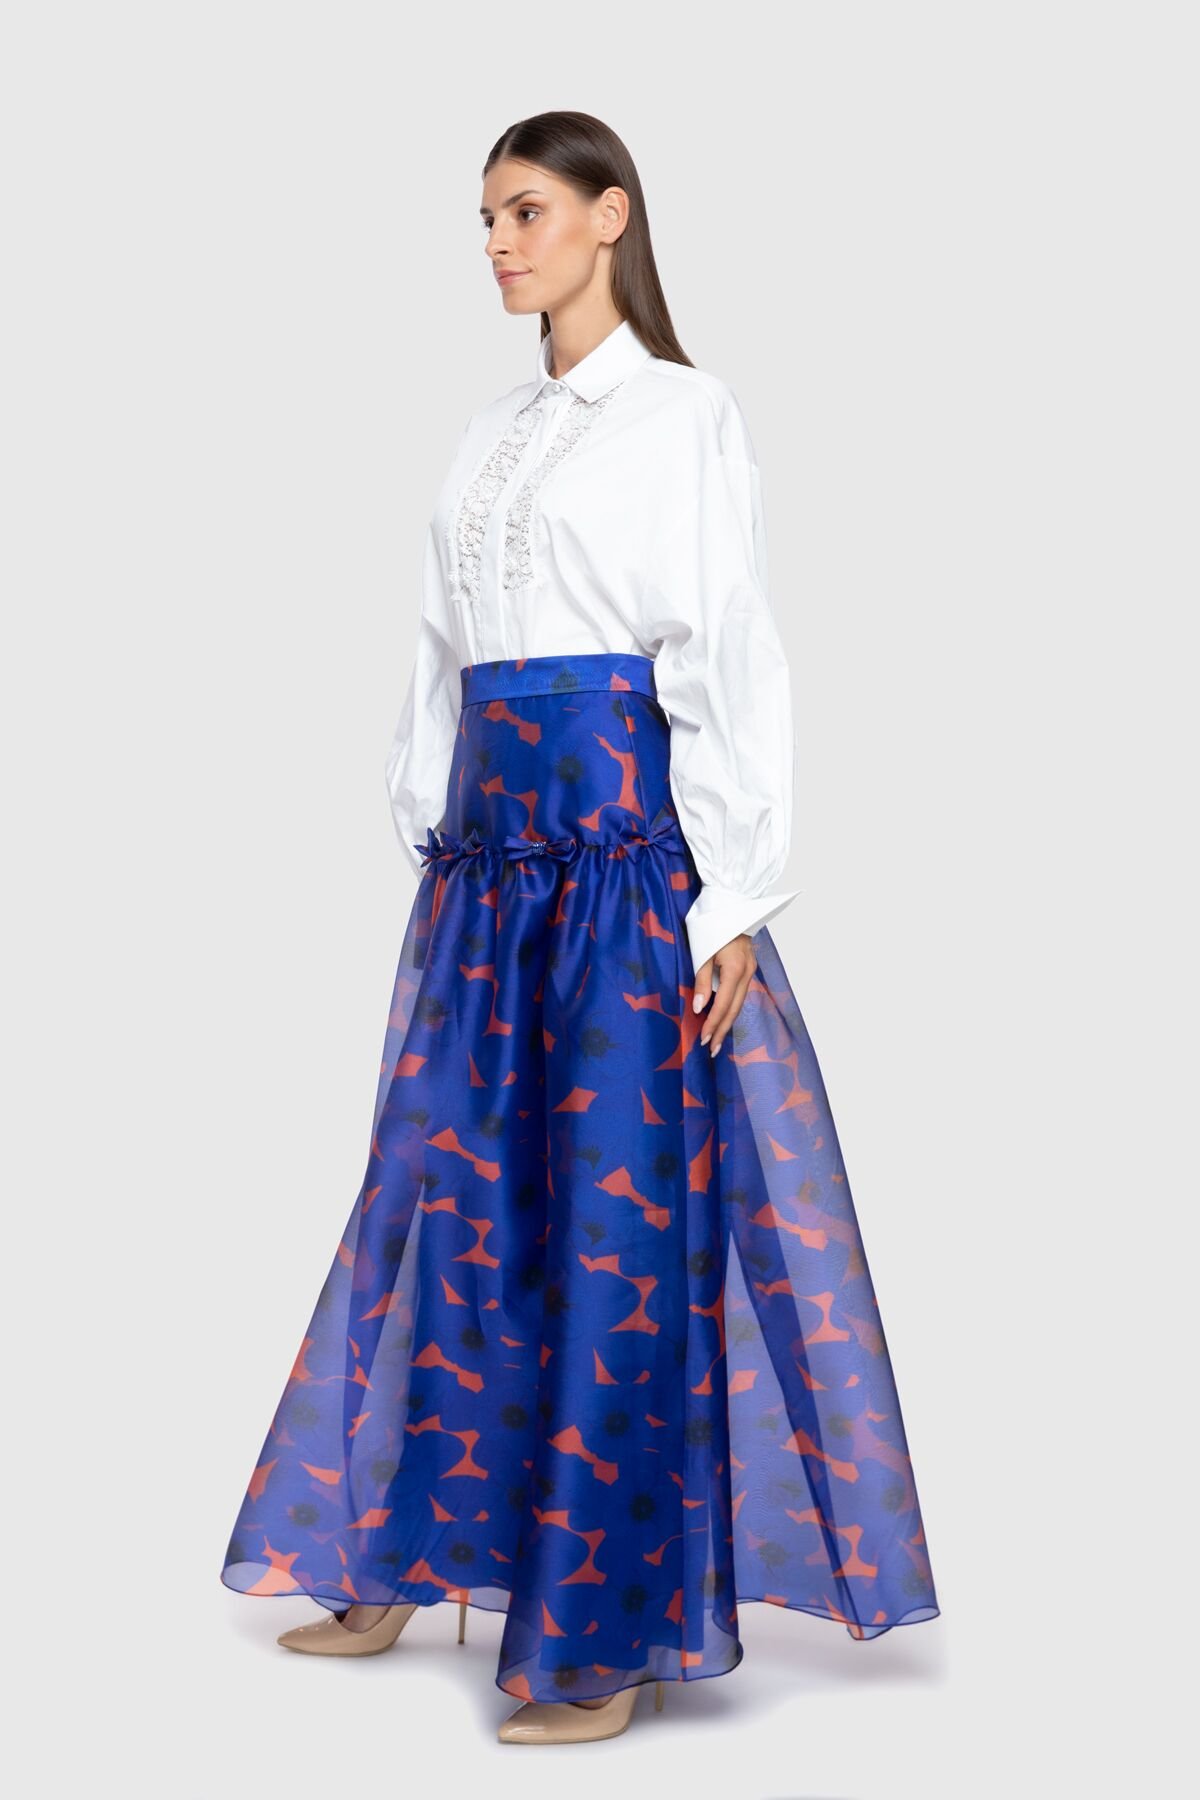 Patterned Long Navy Blue Skirt